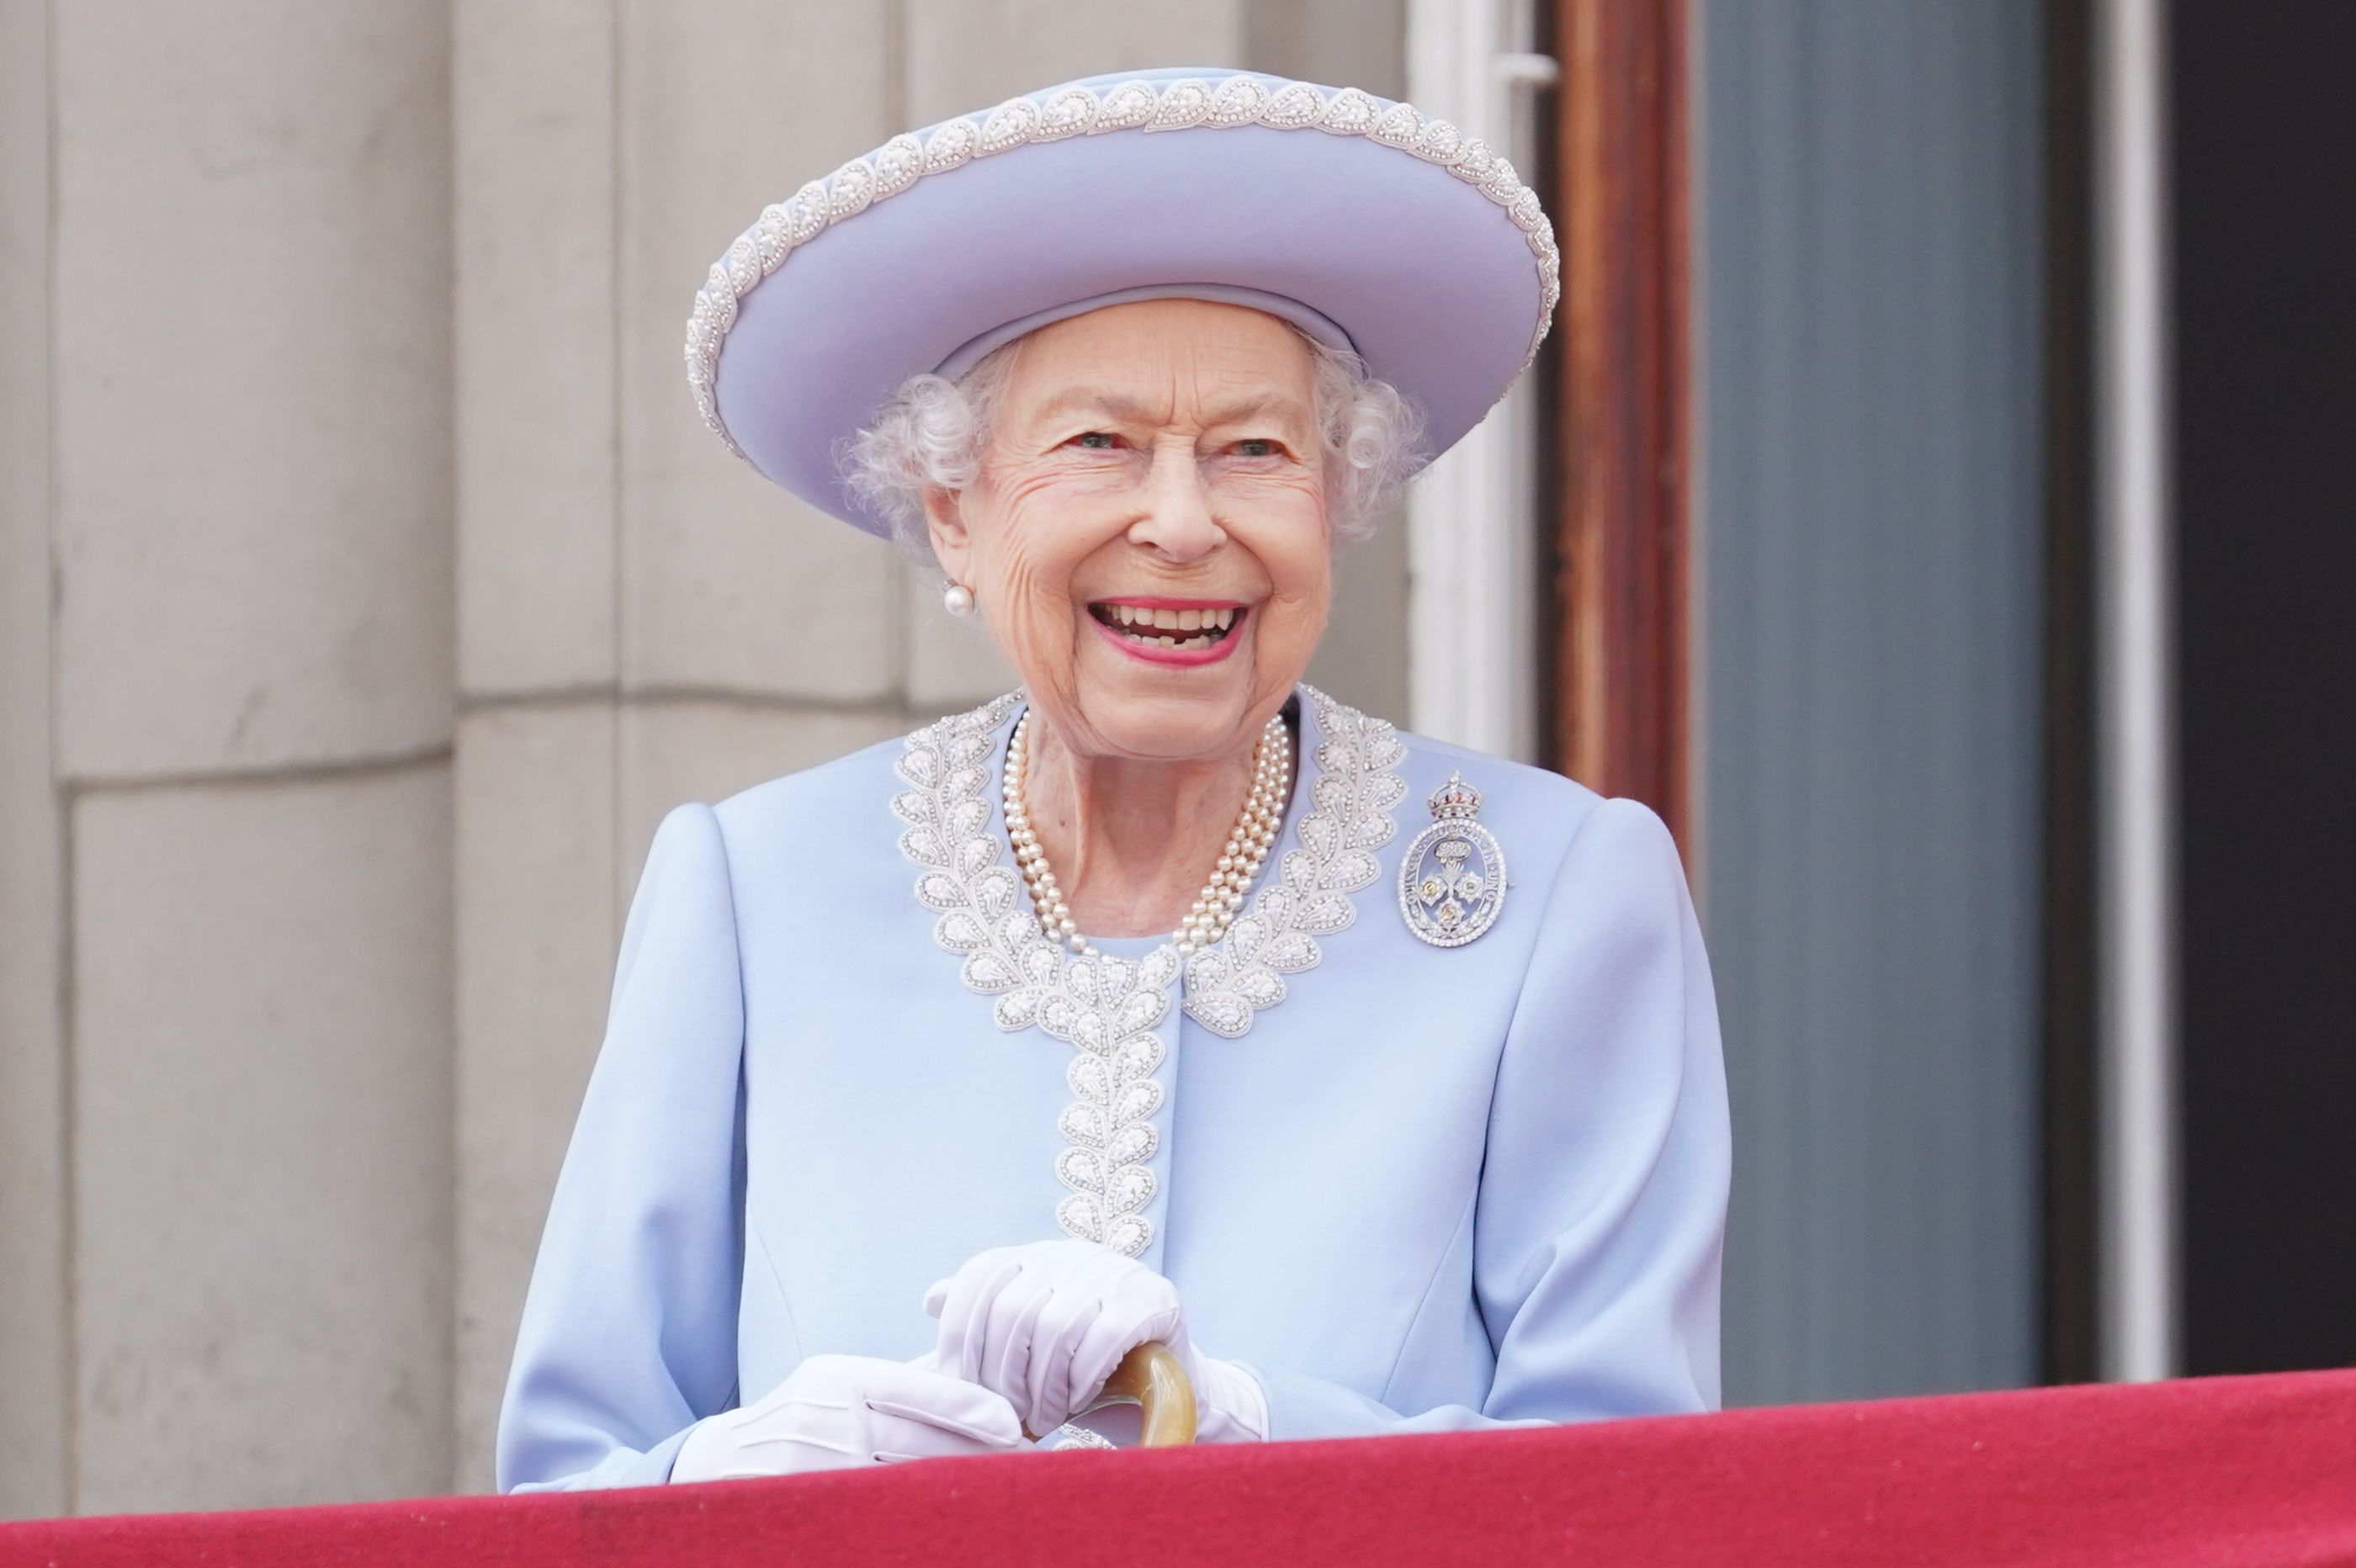 Queen Elizabeth II's Life and Reign in Photos